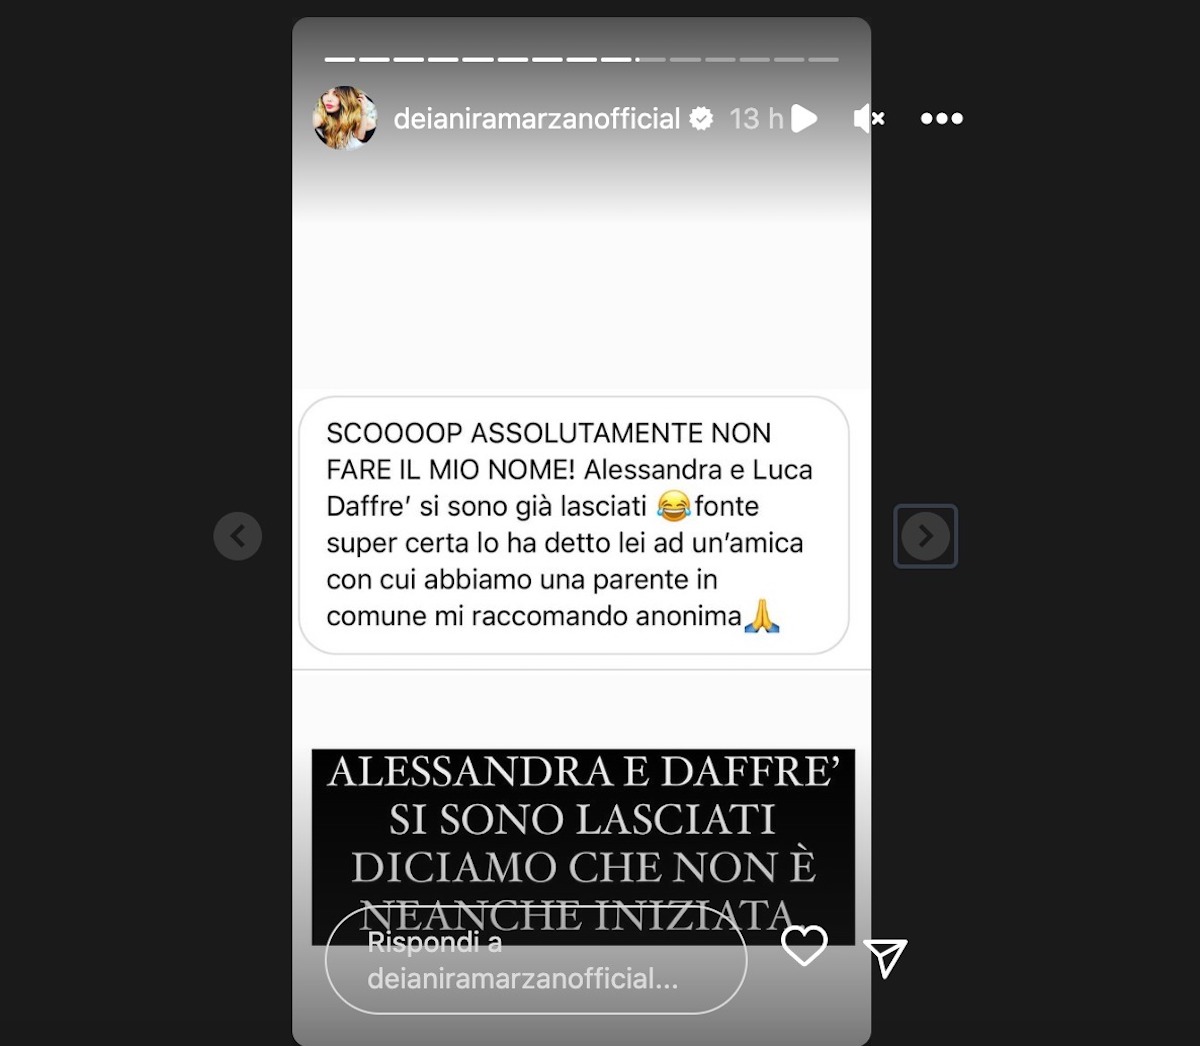 Luca Daffrè Alessandra Somensi gossip ued